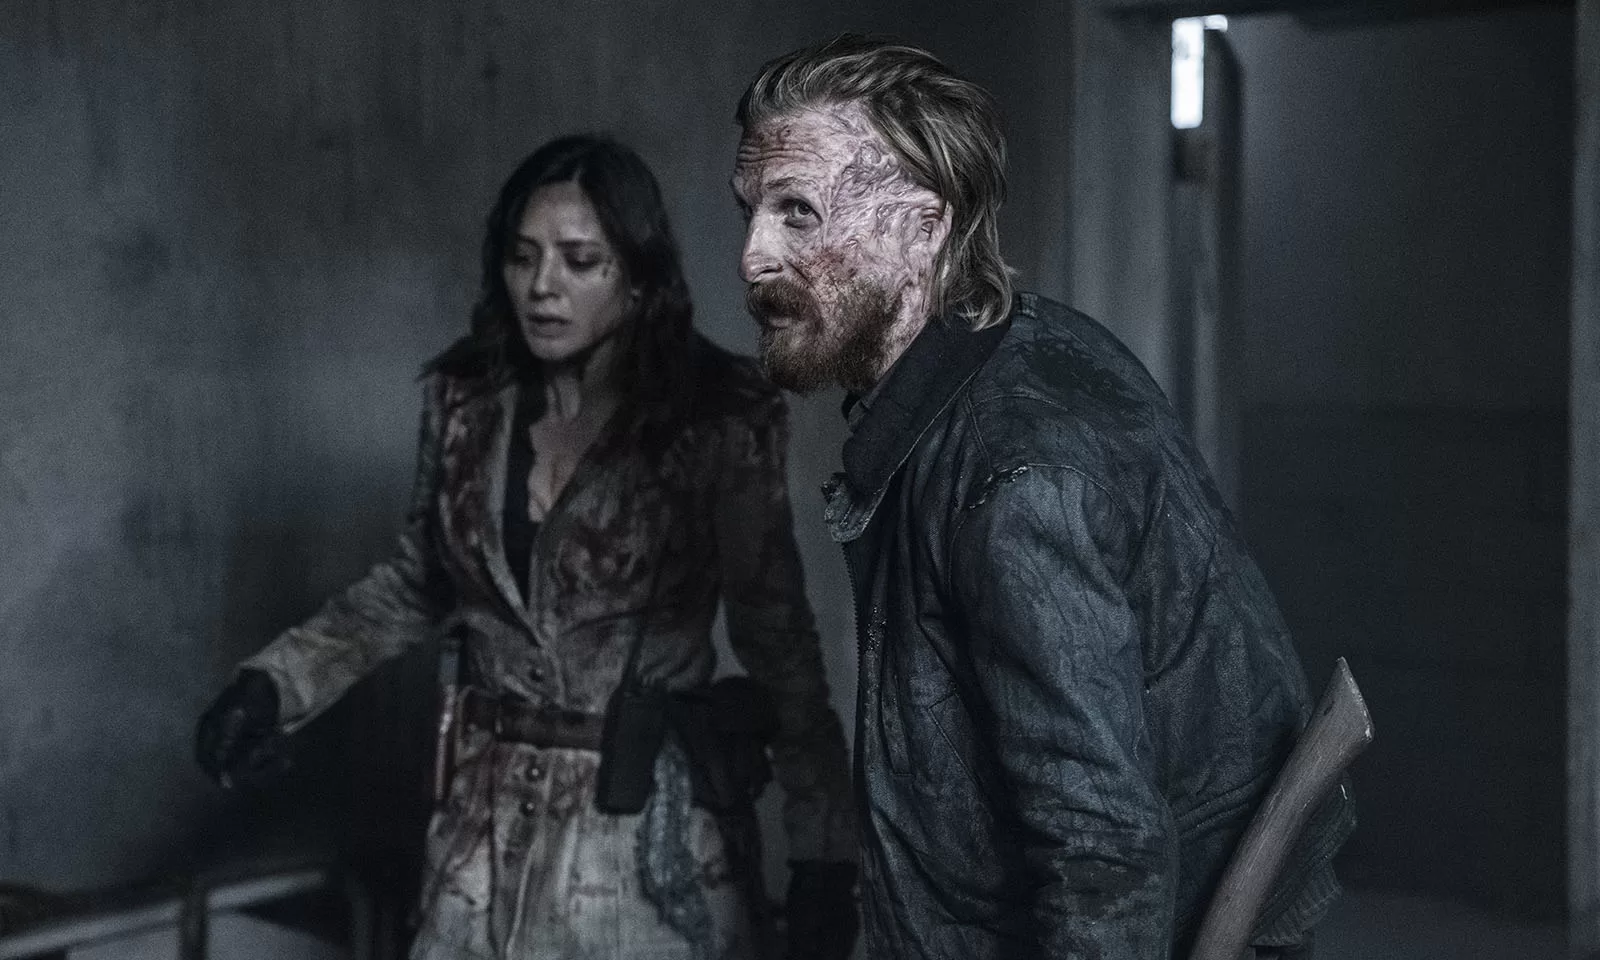 Dwight e Sherry sujos de sangue em cena do episódio 9 da 8ª temporada de Fear the Walking Dead.